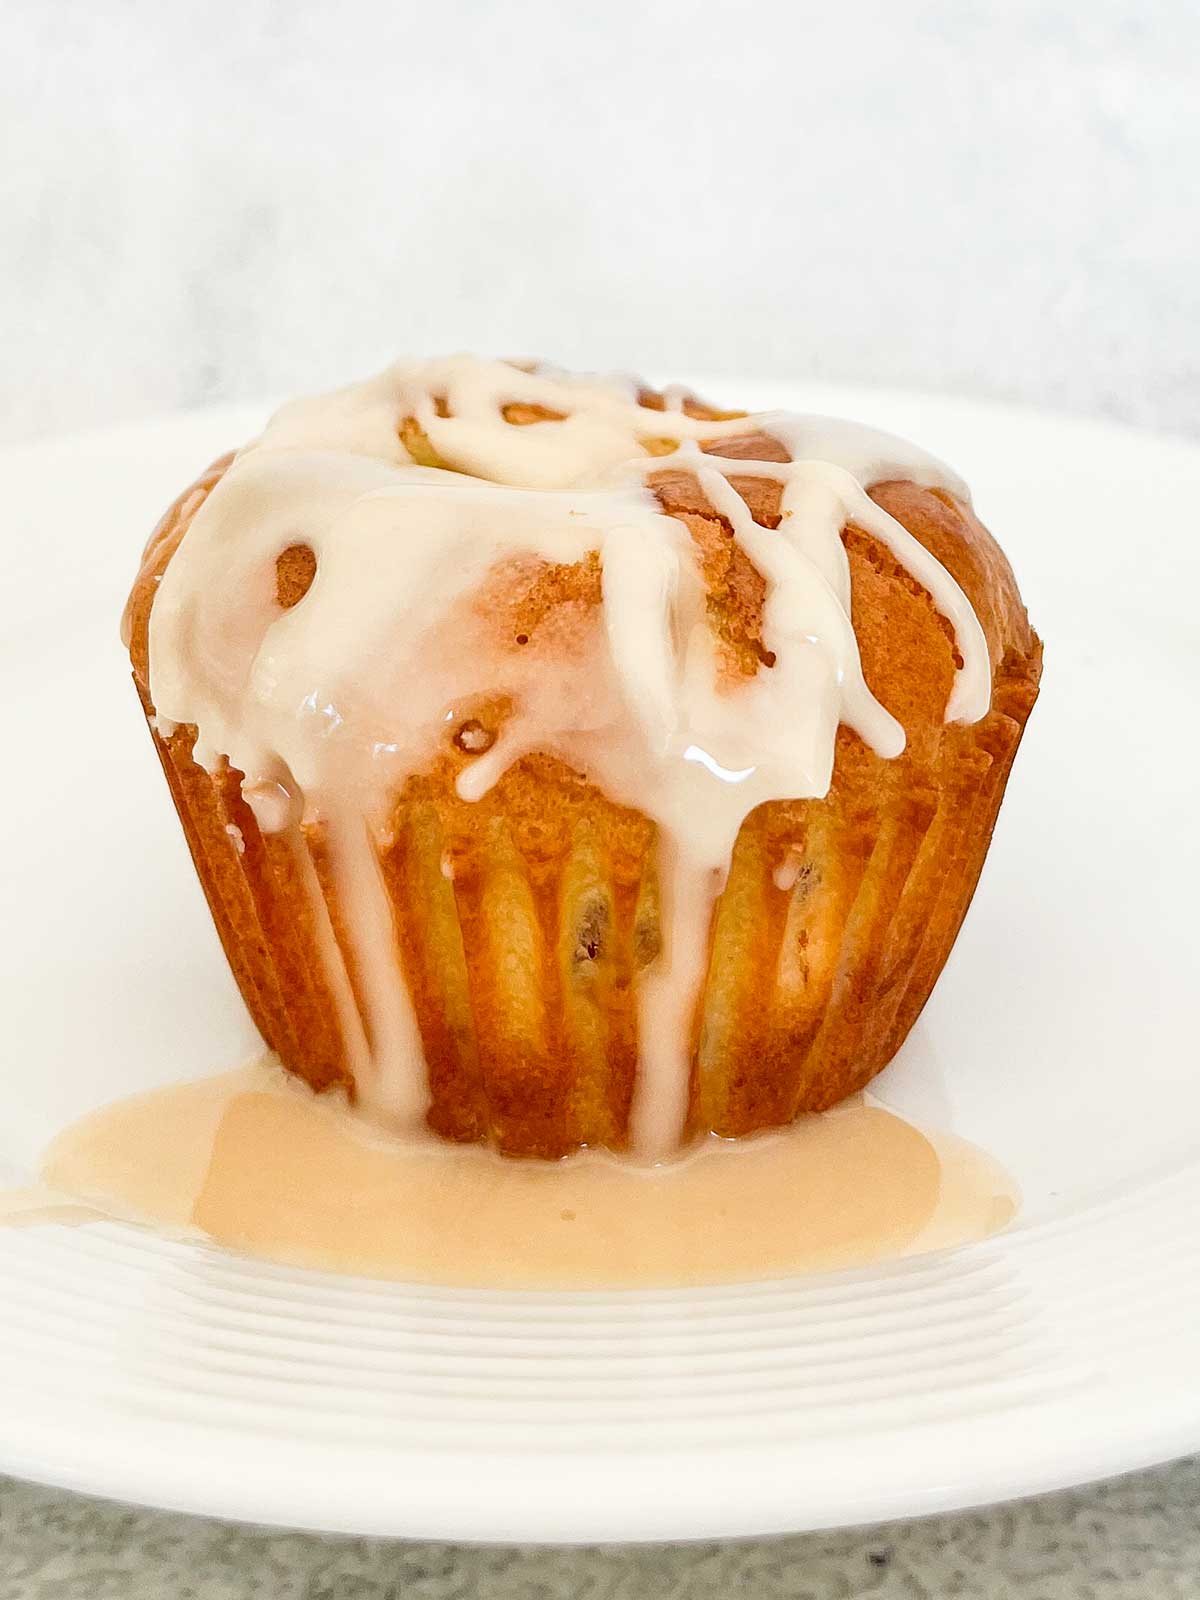 single muffin with vanilla drizzle